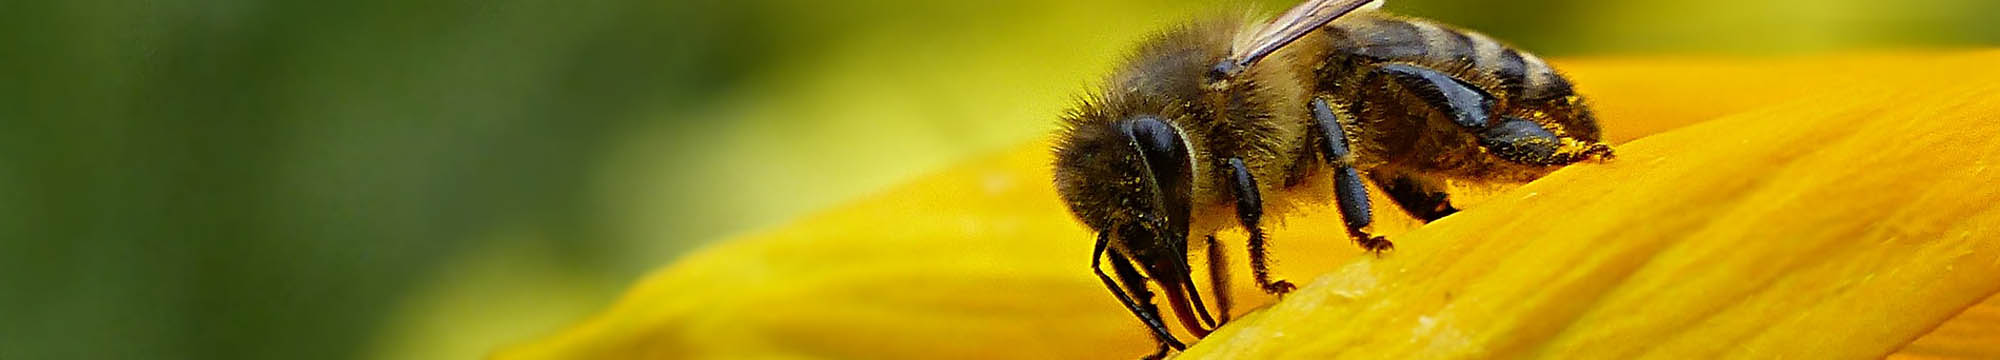 Sarum Bee Supplies Wiltshire worker bees